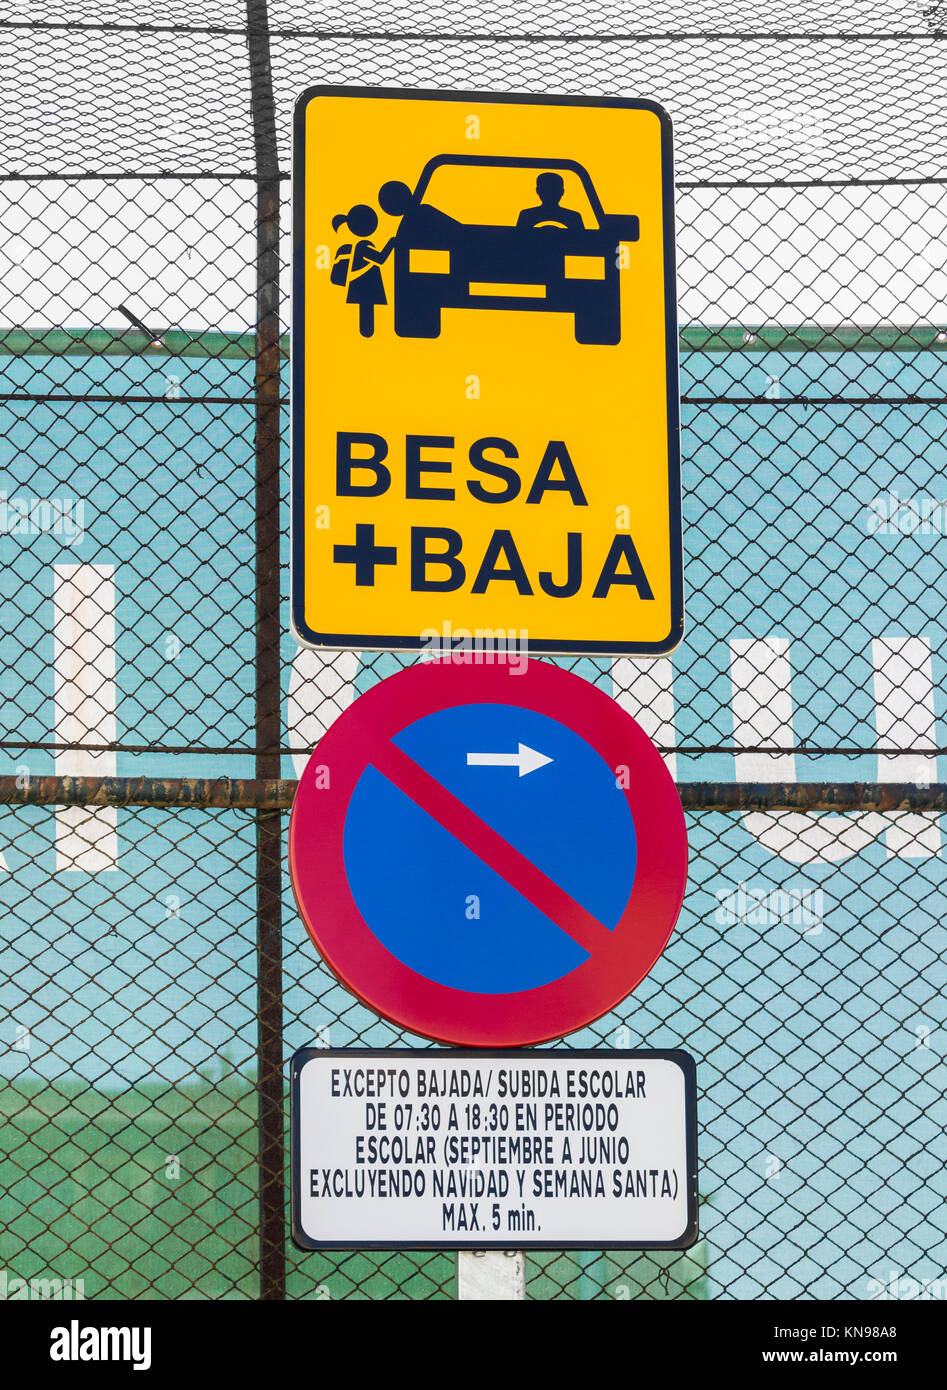 Le BESA  + Baja (kiss et retour) zone pour les parents déposent les enfants à l'extérieur de l'école en Espagne. Banque D'Images